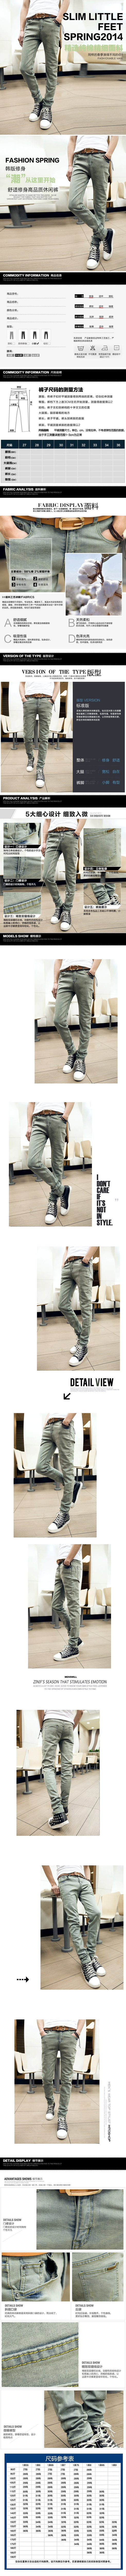 mssefn 2014新款时尚百搭个性潮修身复古男士小脚牛仔裤2098-K33